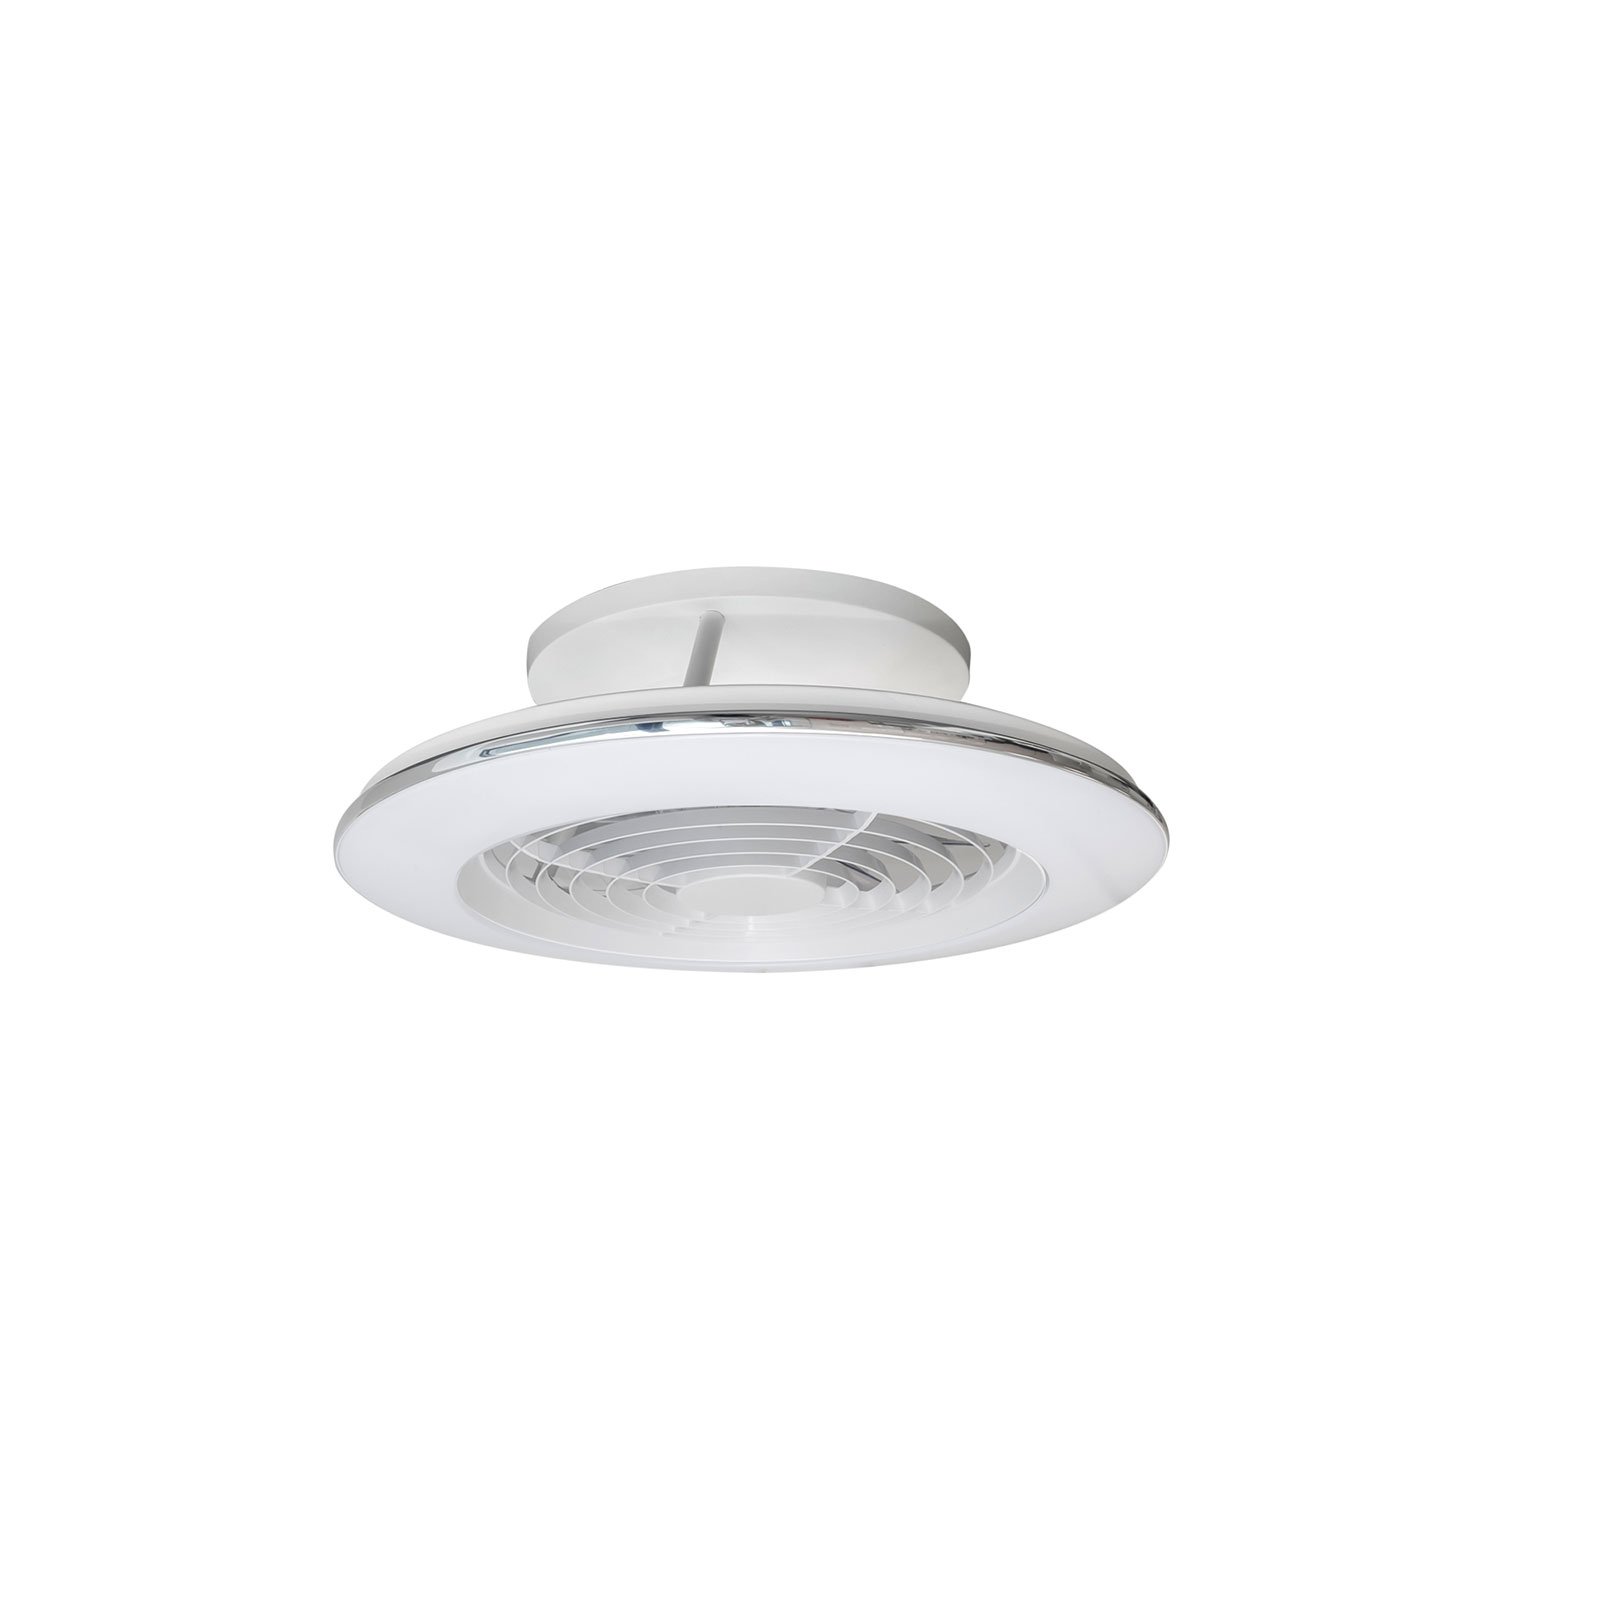 Alisio mini LED ceiling fan, white